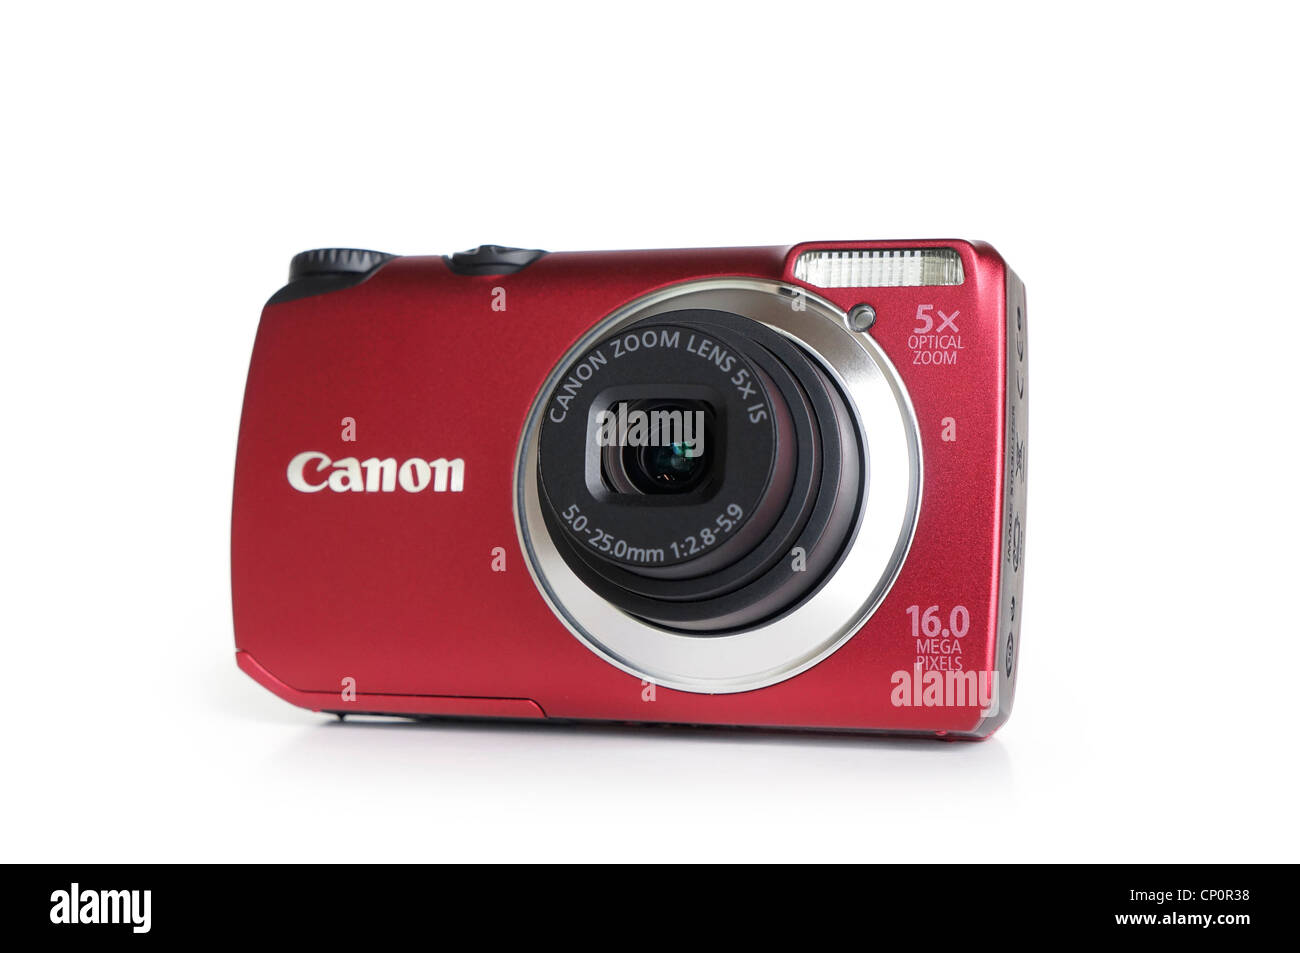 Fotocamera digitale, Punto e sparare Compact Foto Stock